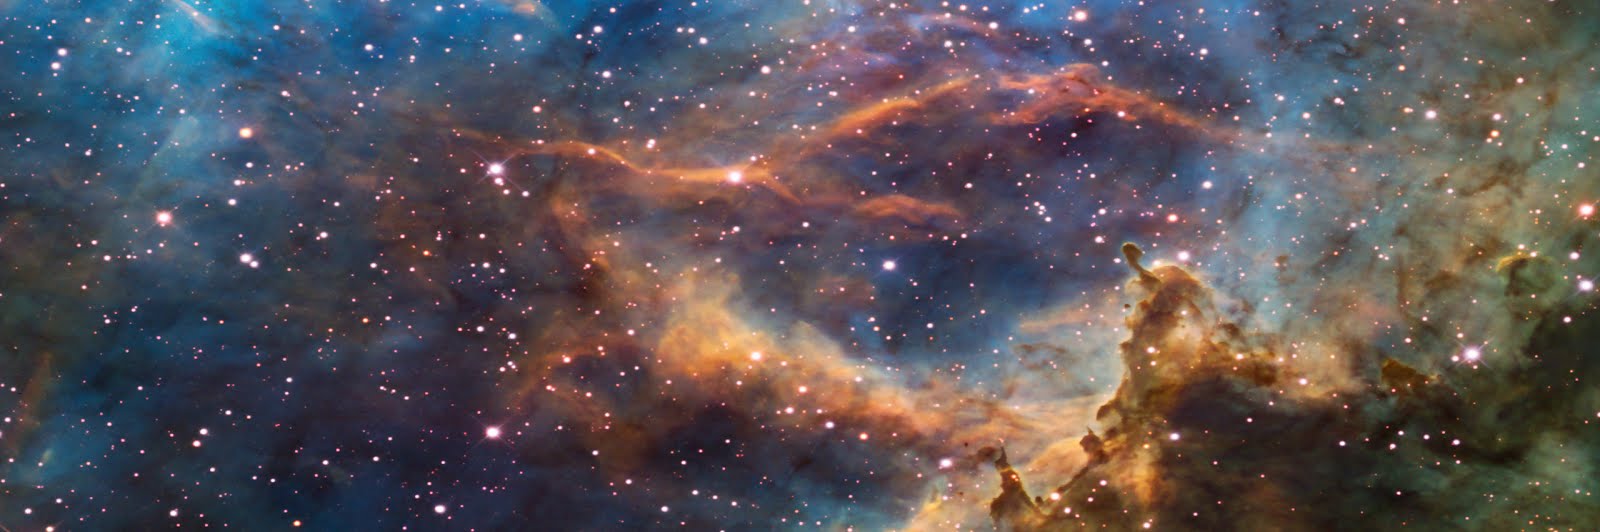 Nebulosa  Carina